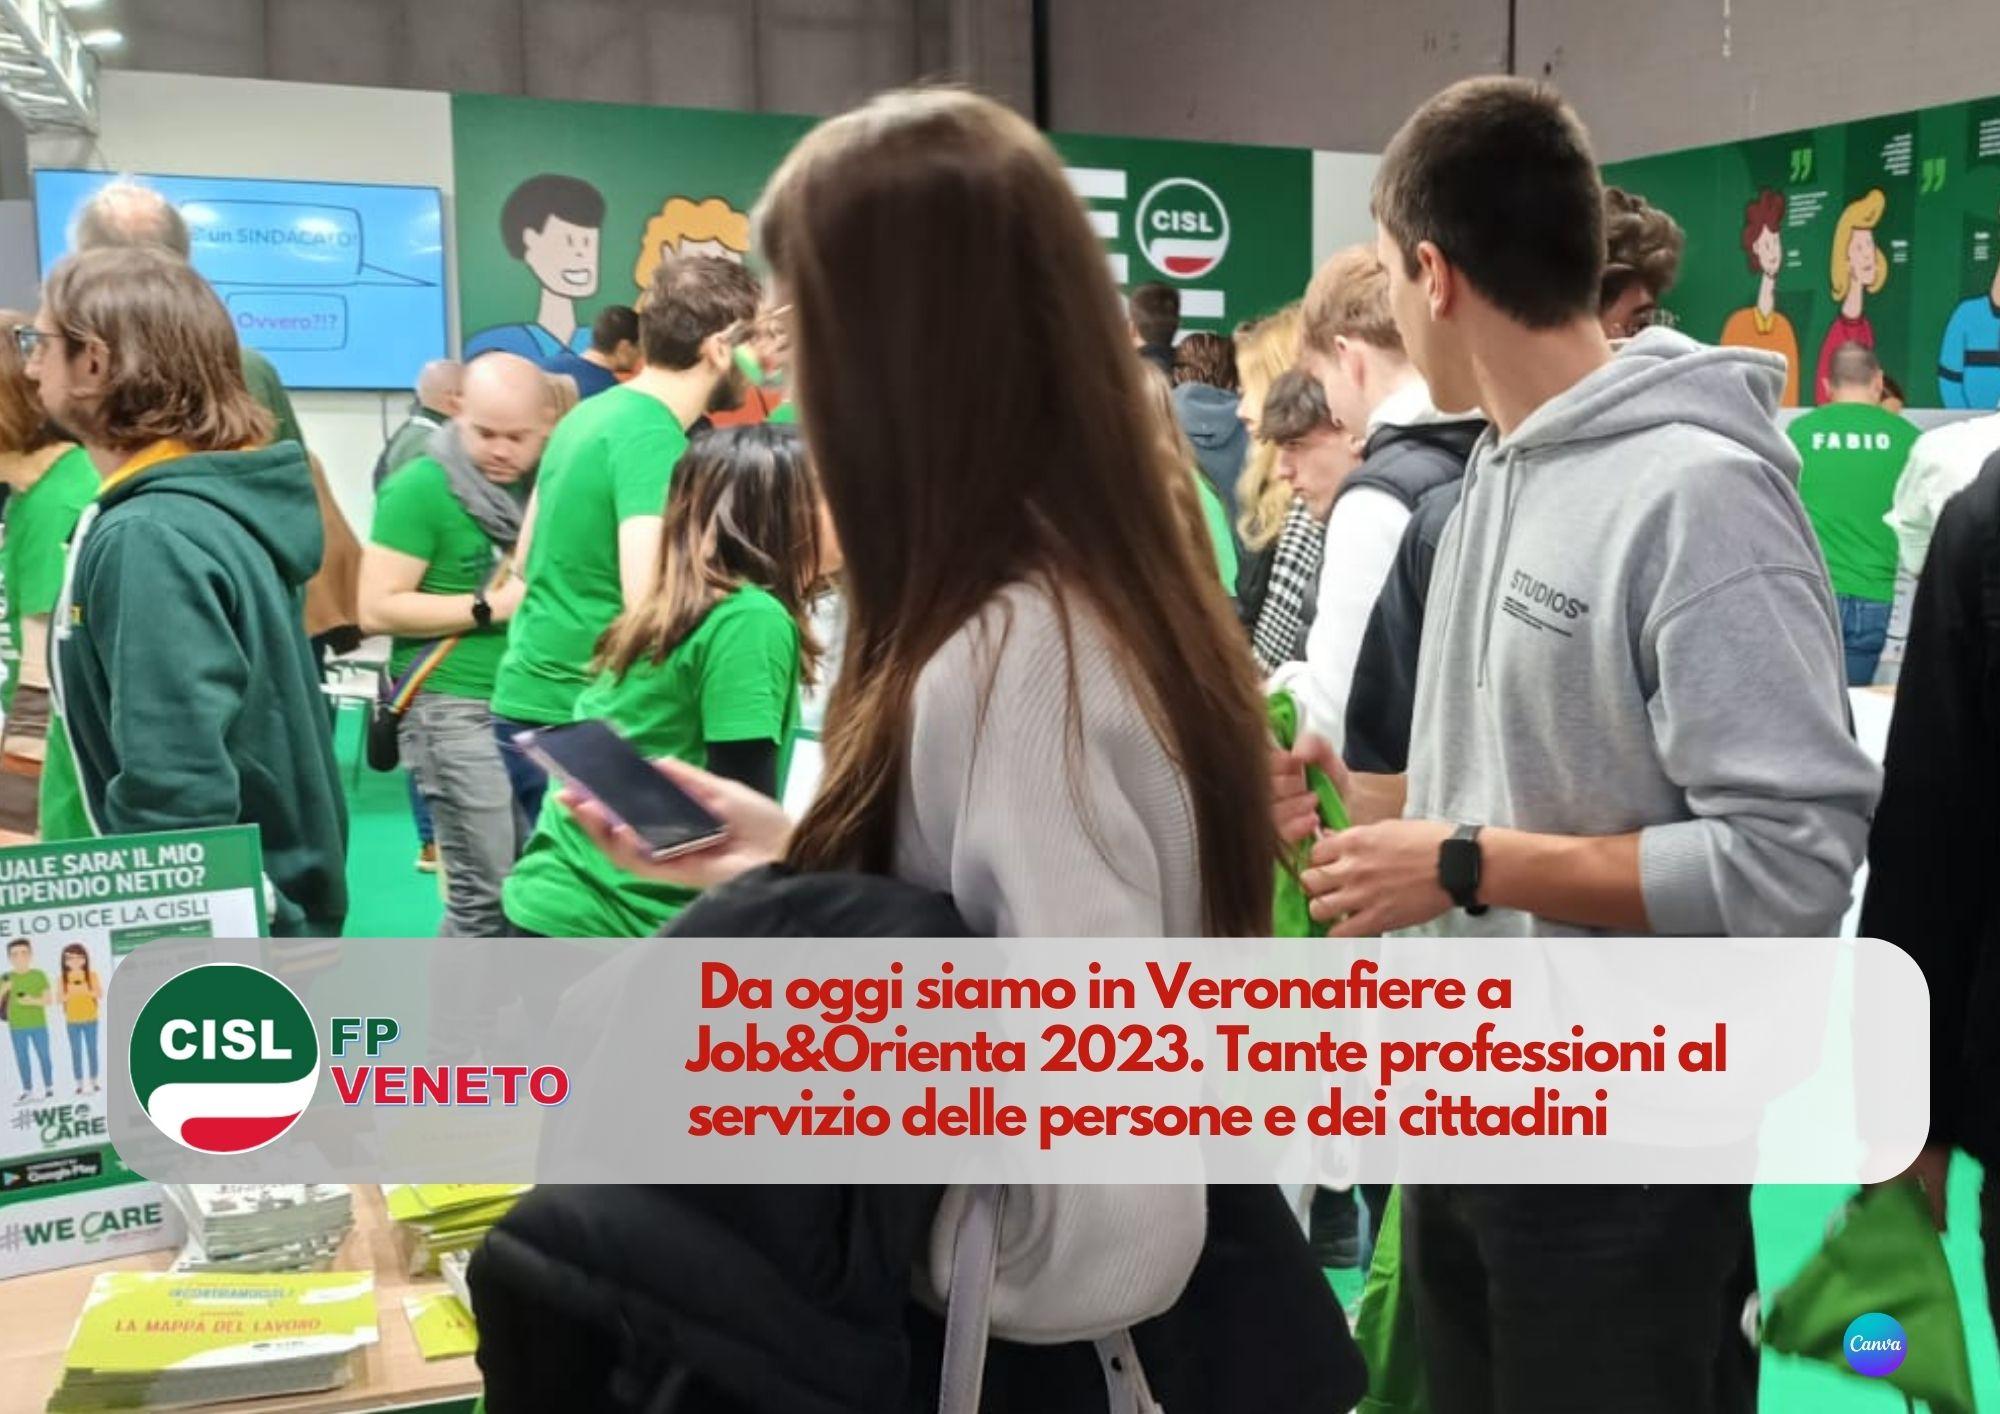 CISL FP Veneto. Siamo in Veronafiere a Job&Orienta 2023. Tante professioni al servizio delle persone e dei cittadini